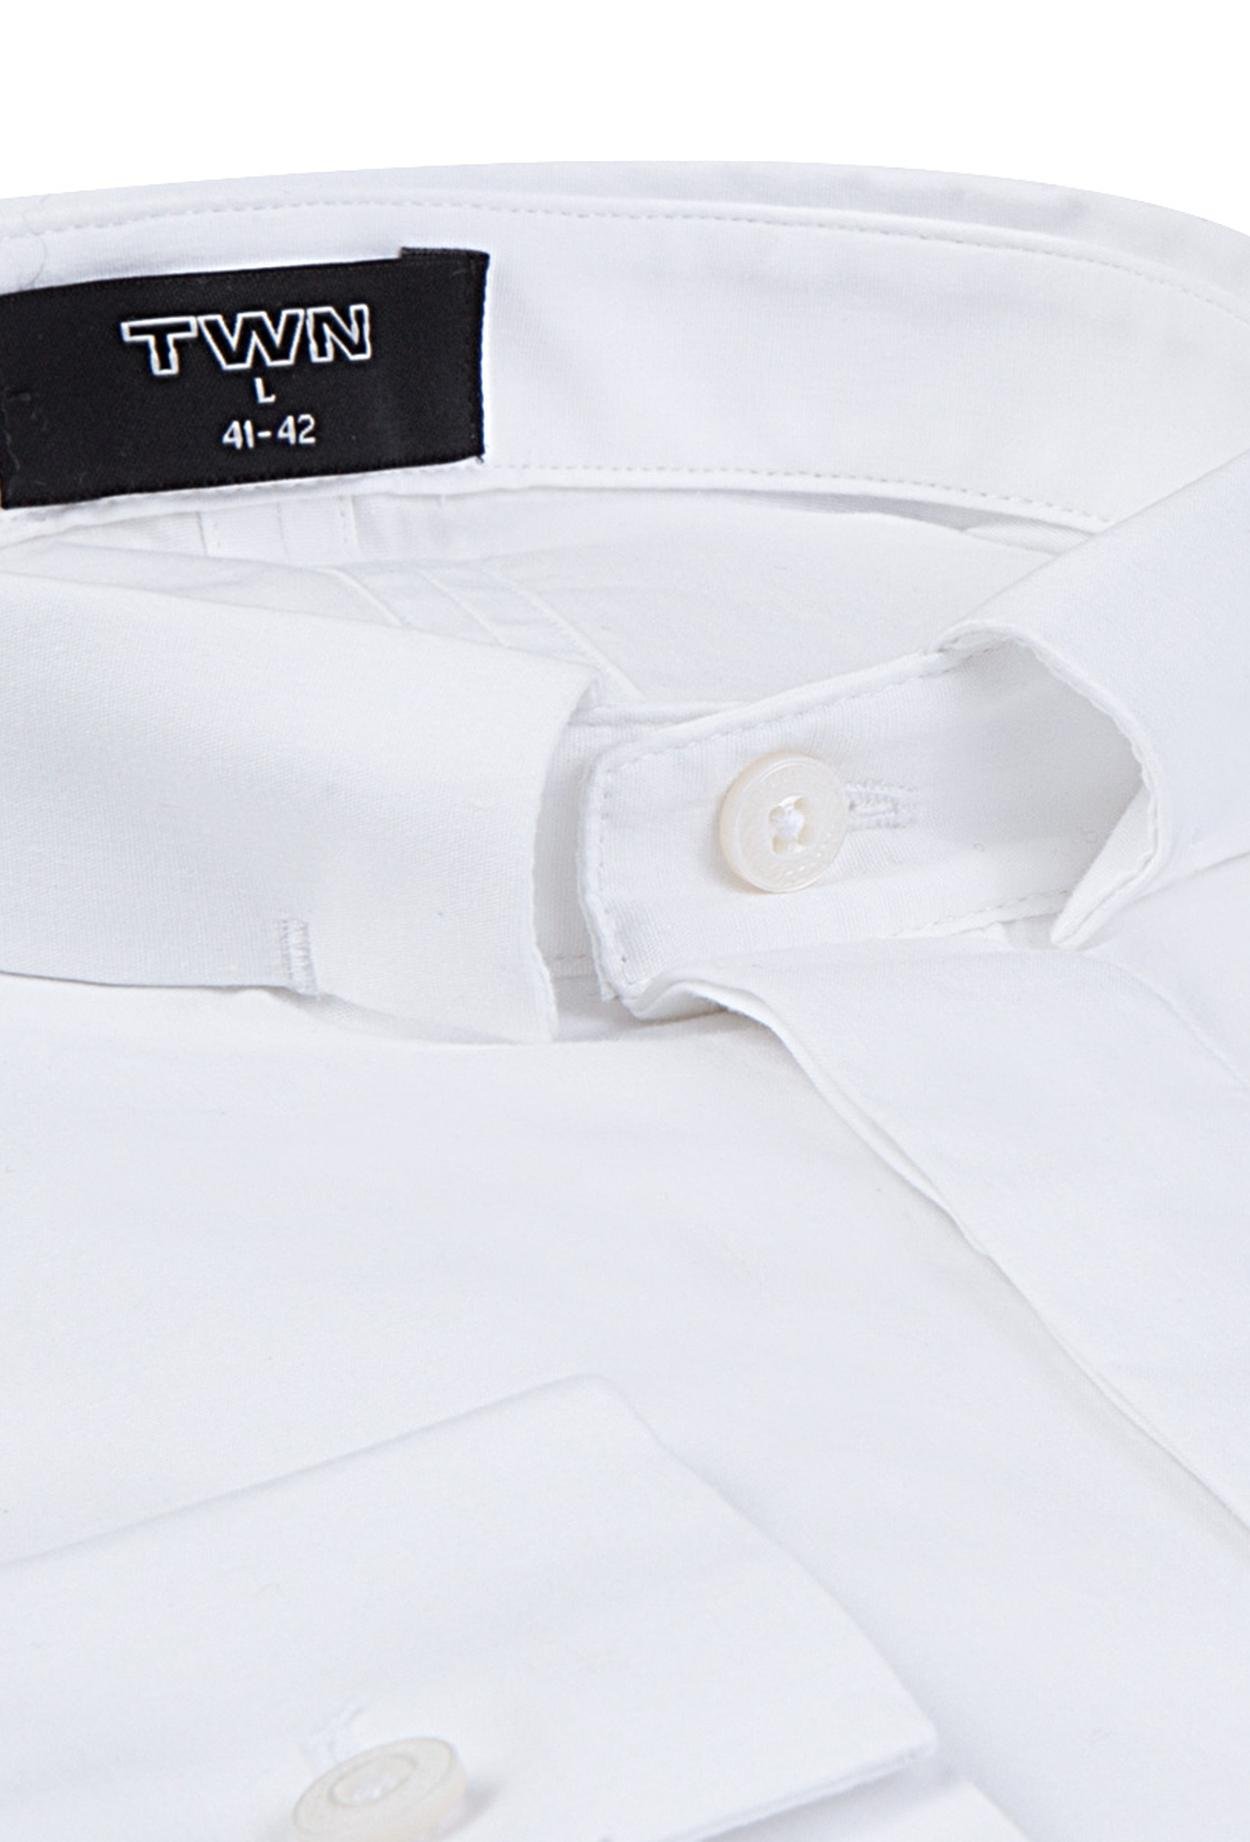 Twn Slim Fit Beyaz Düz Gömlek